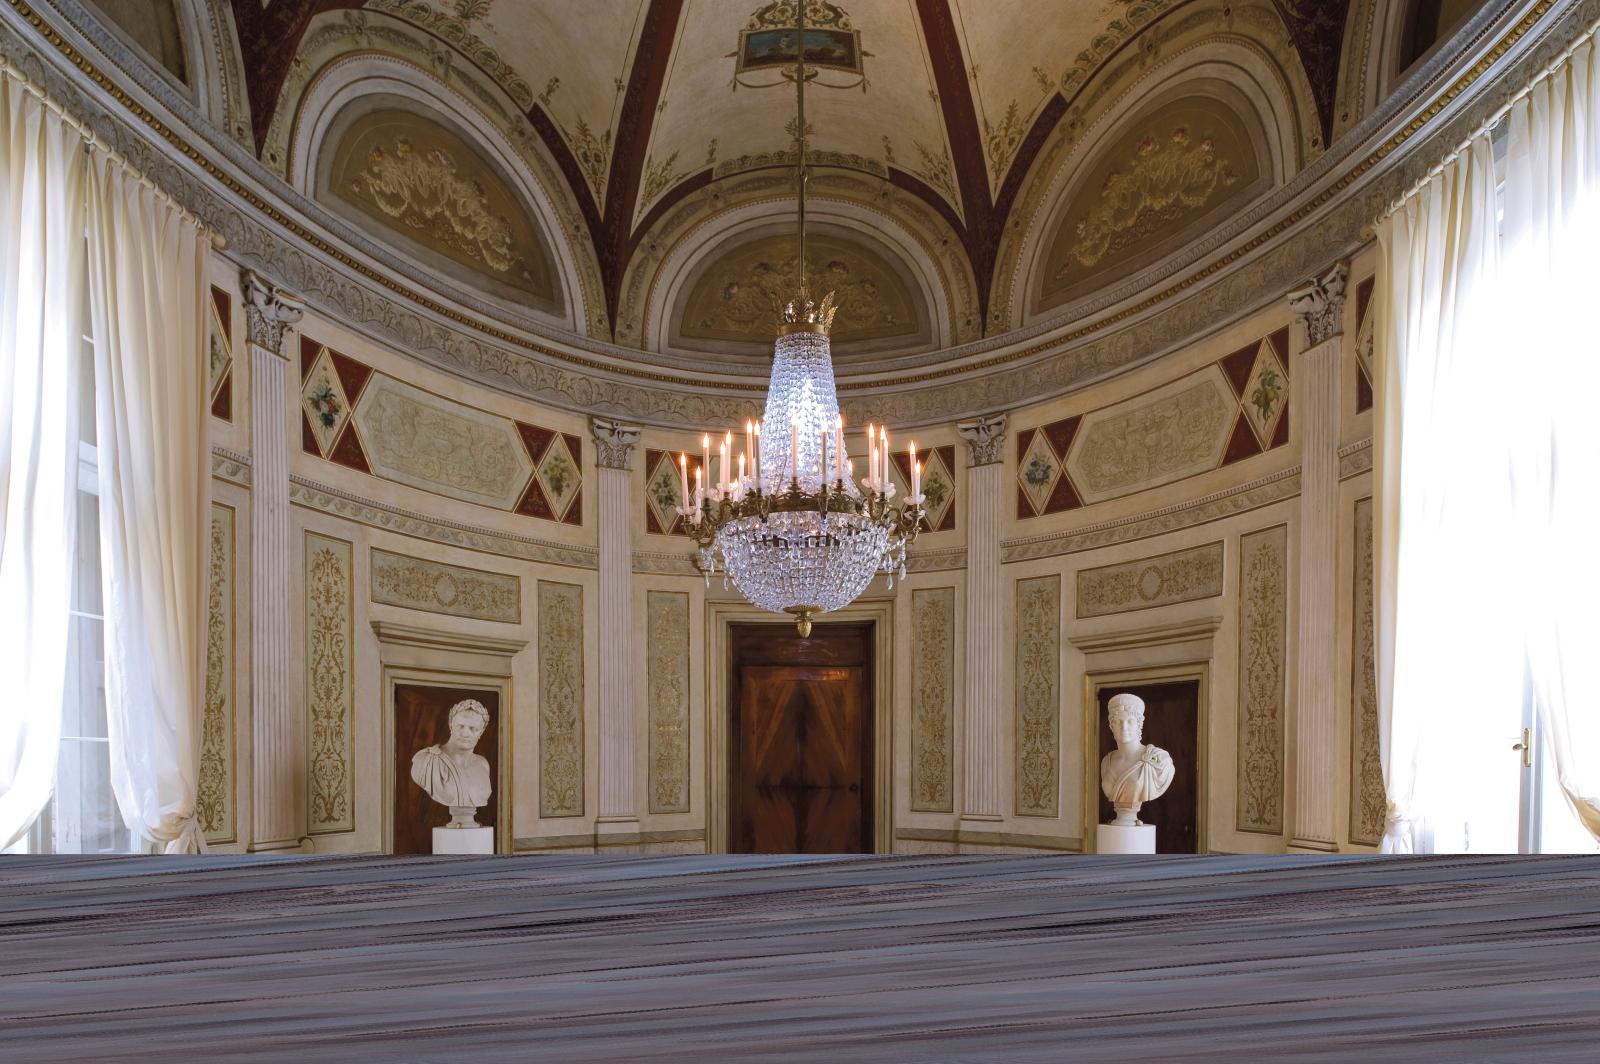 La néoclassique salle des gardes des appartements impériaux du musée Correr, palais royal de Venise, a été restaurée grâce au soutien du C